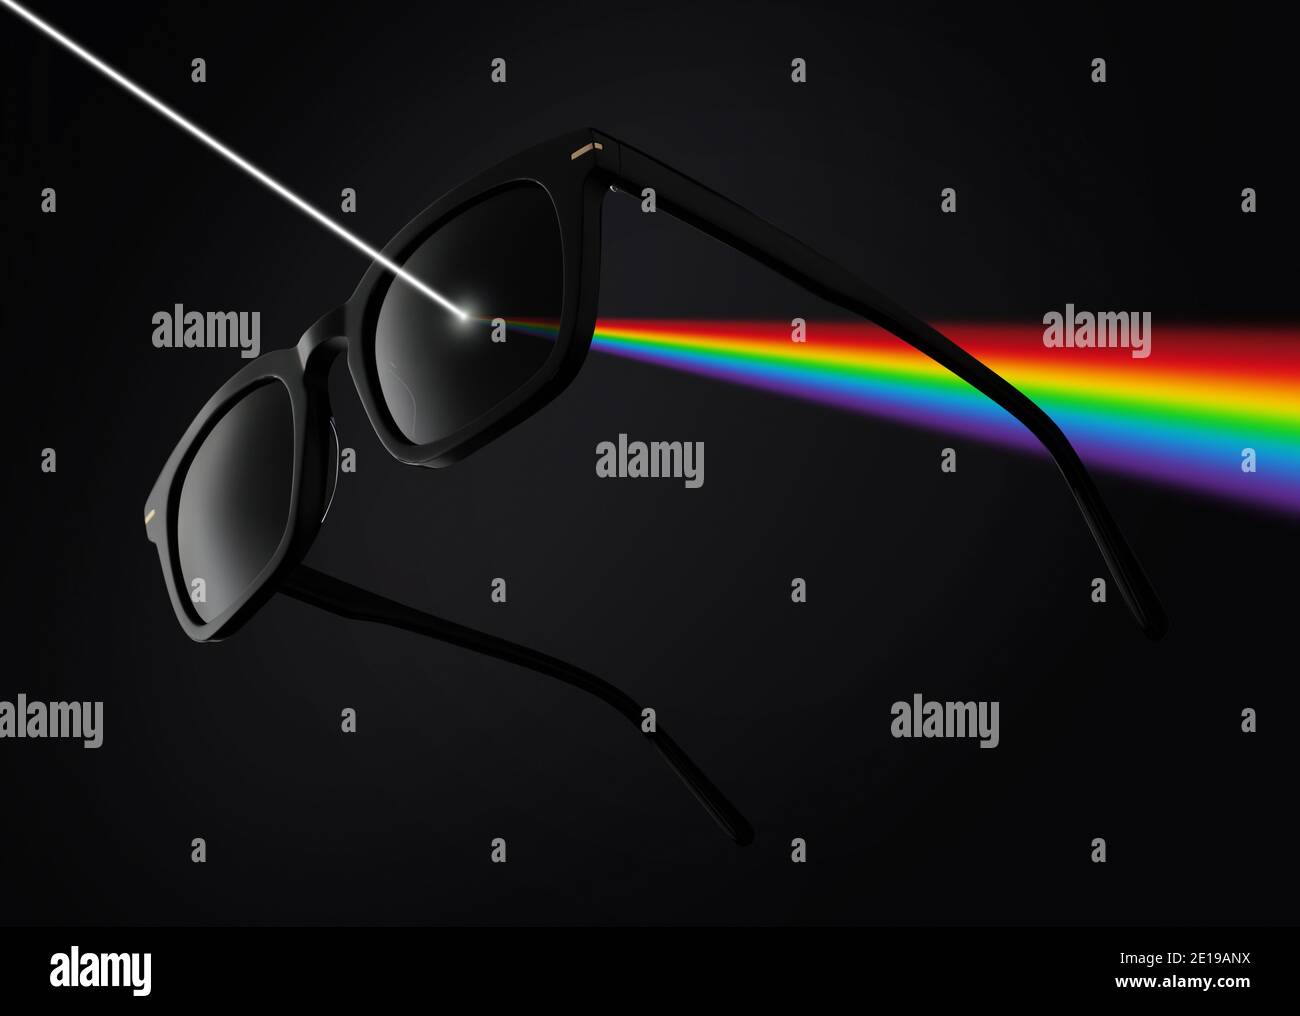 concepto de lentes polarizadas, gafas de sol aisladas sobre fondo negro filtran los rayos del sol, con colores de arco iris ilustración Foto de stock